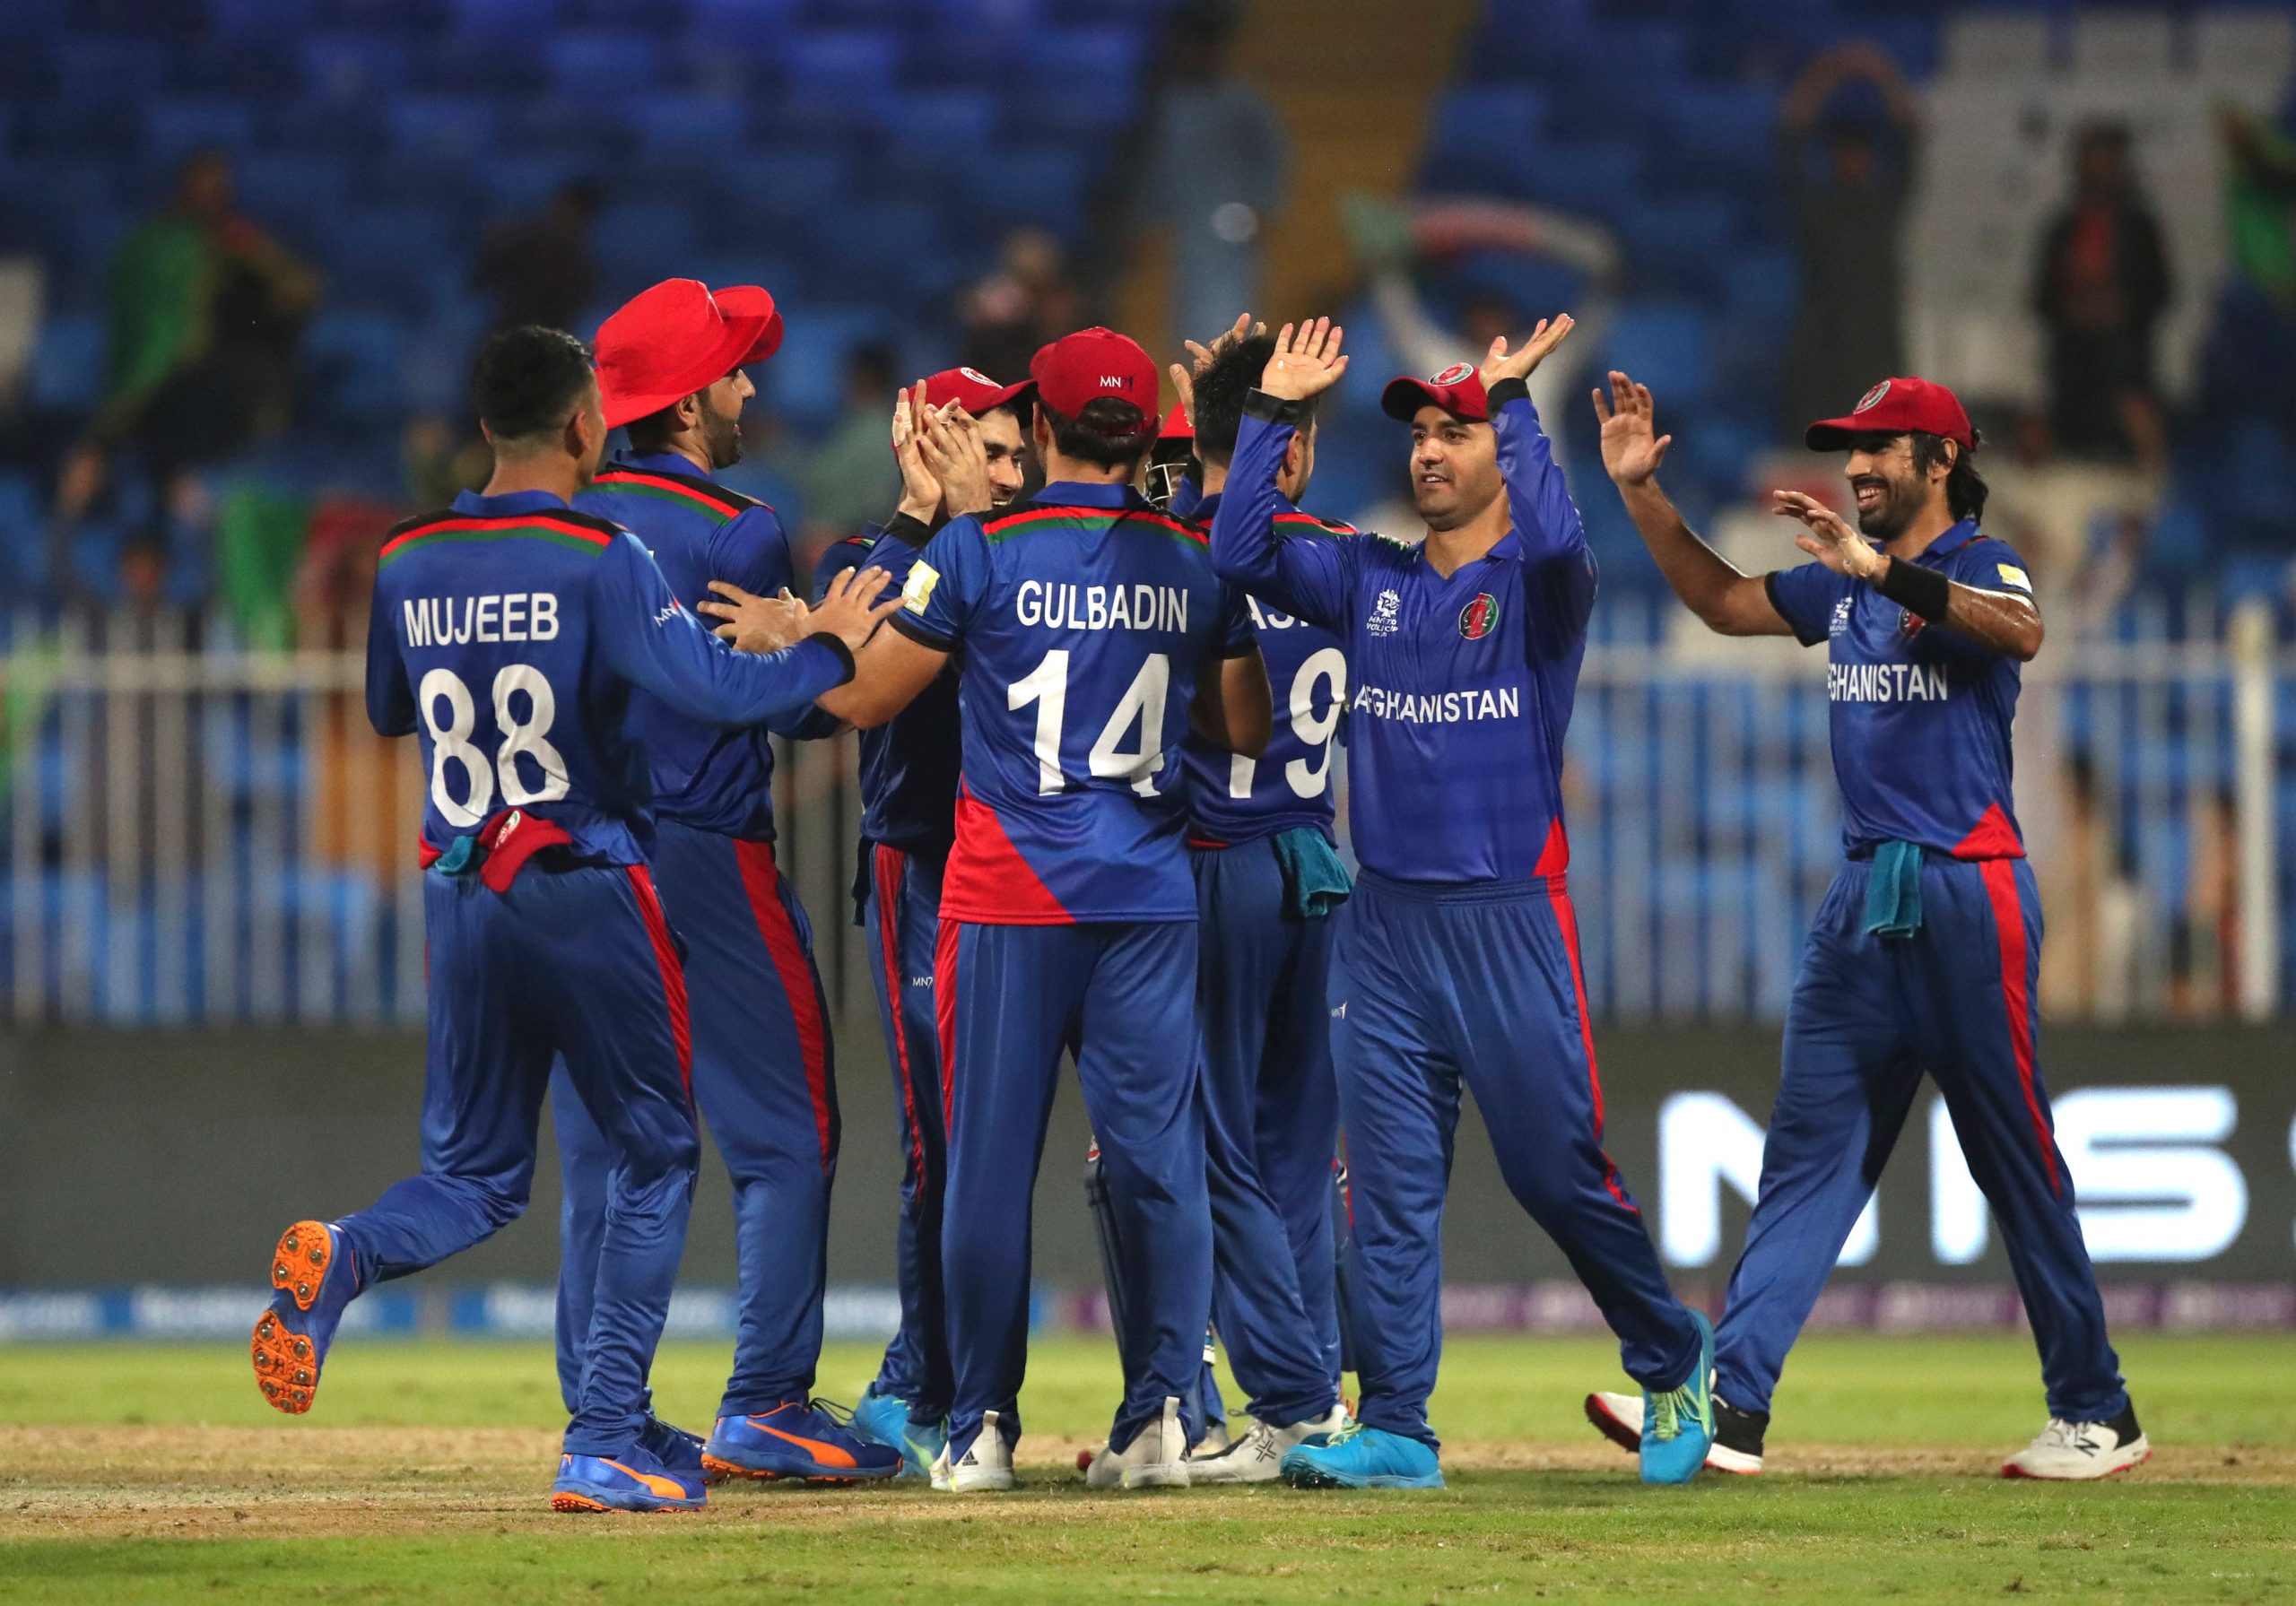 T20 World Cup AFG vs NZ: न्यूजीलैंड हार के साथ अफगानिस्तान की जीत भी दे सकती है भारत को झटका